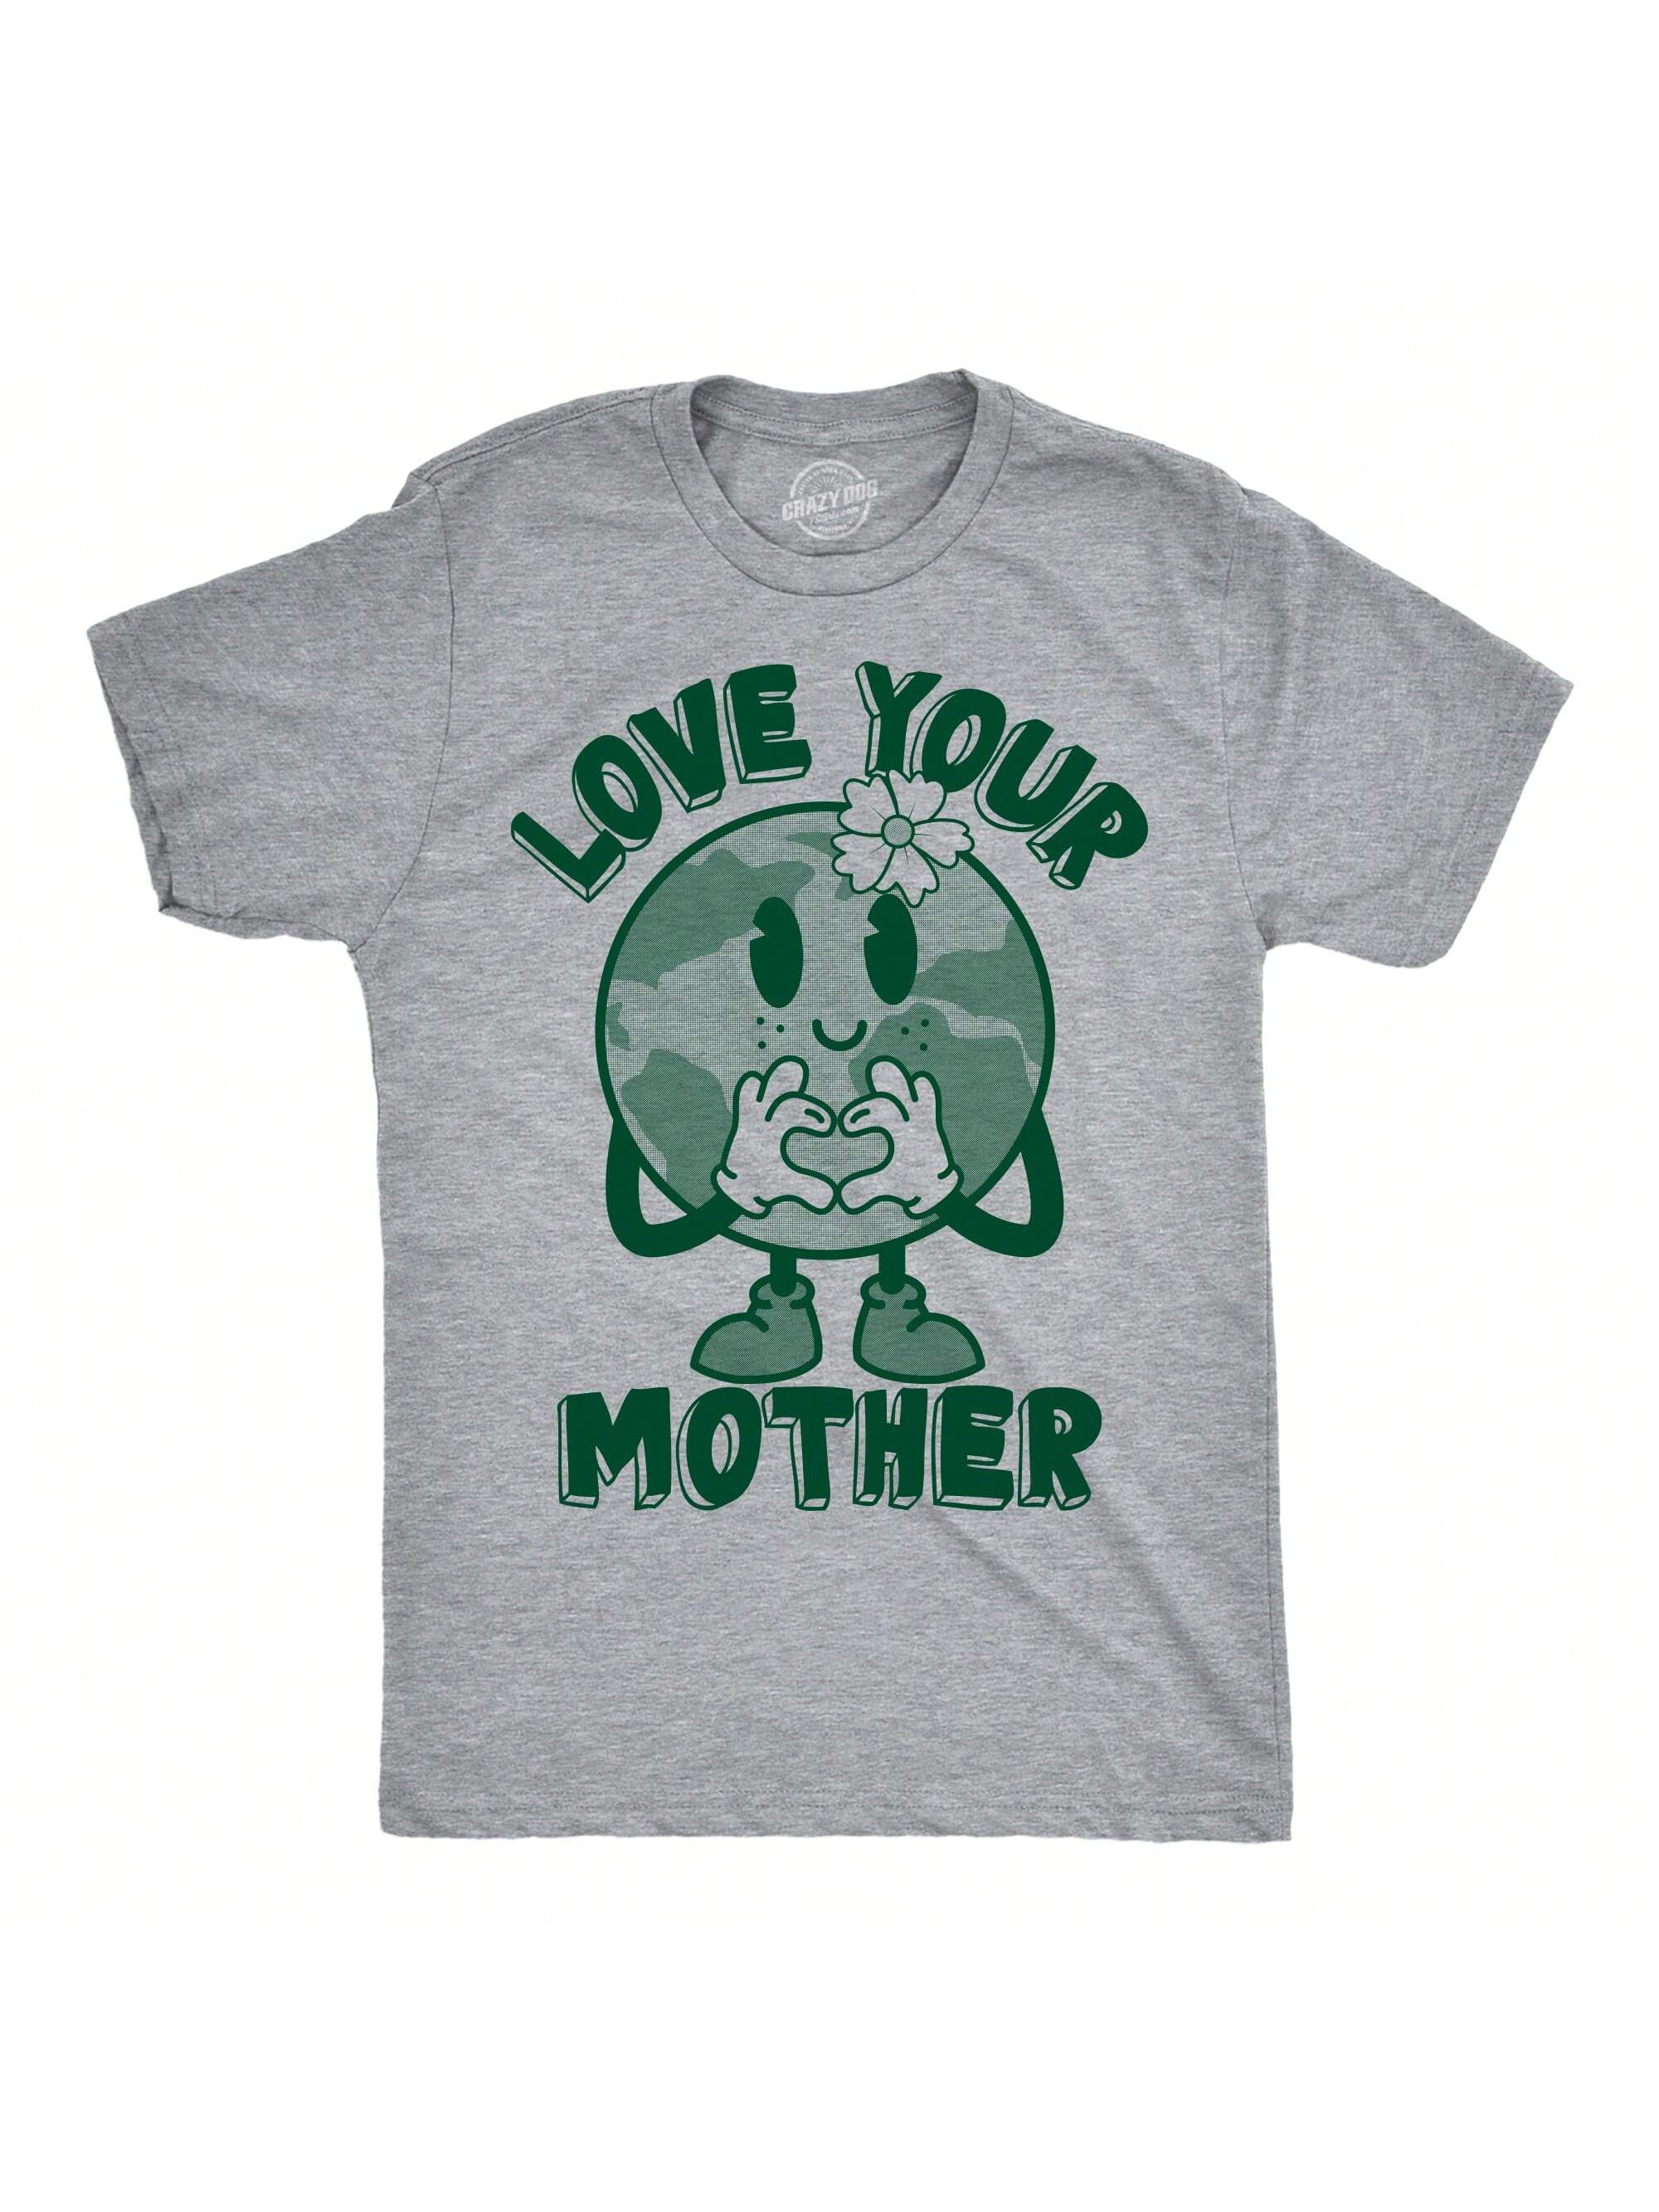 Мужские забавные футболки с рисунком «Love Your Mother Earth Day» для мужчин (светло-серый Хизер — Love Your Mother) — L, светлый хизер грей - люби свою маму мужские забавные футболки its my earth day светлый хизер грей это мой день земли